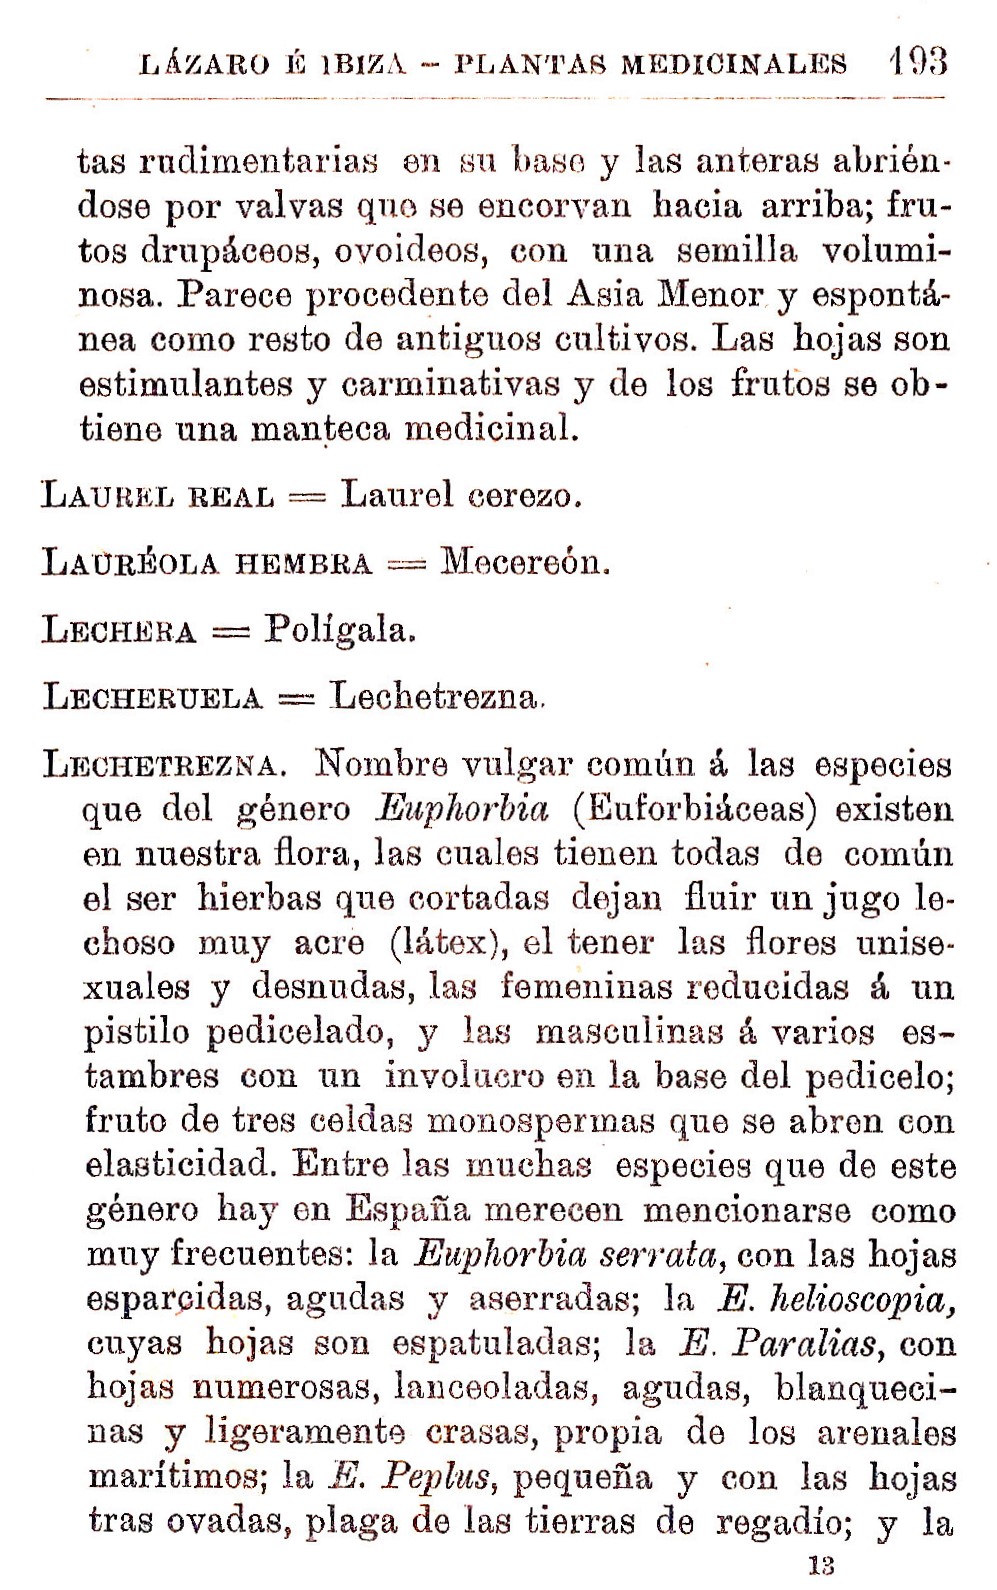 Plantas Medicinales. Blas Lazaro Ibiza. Índice alfabético de plantas. L. Laurel real.